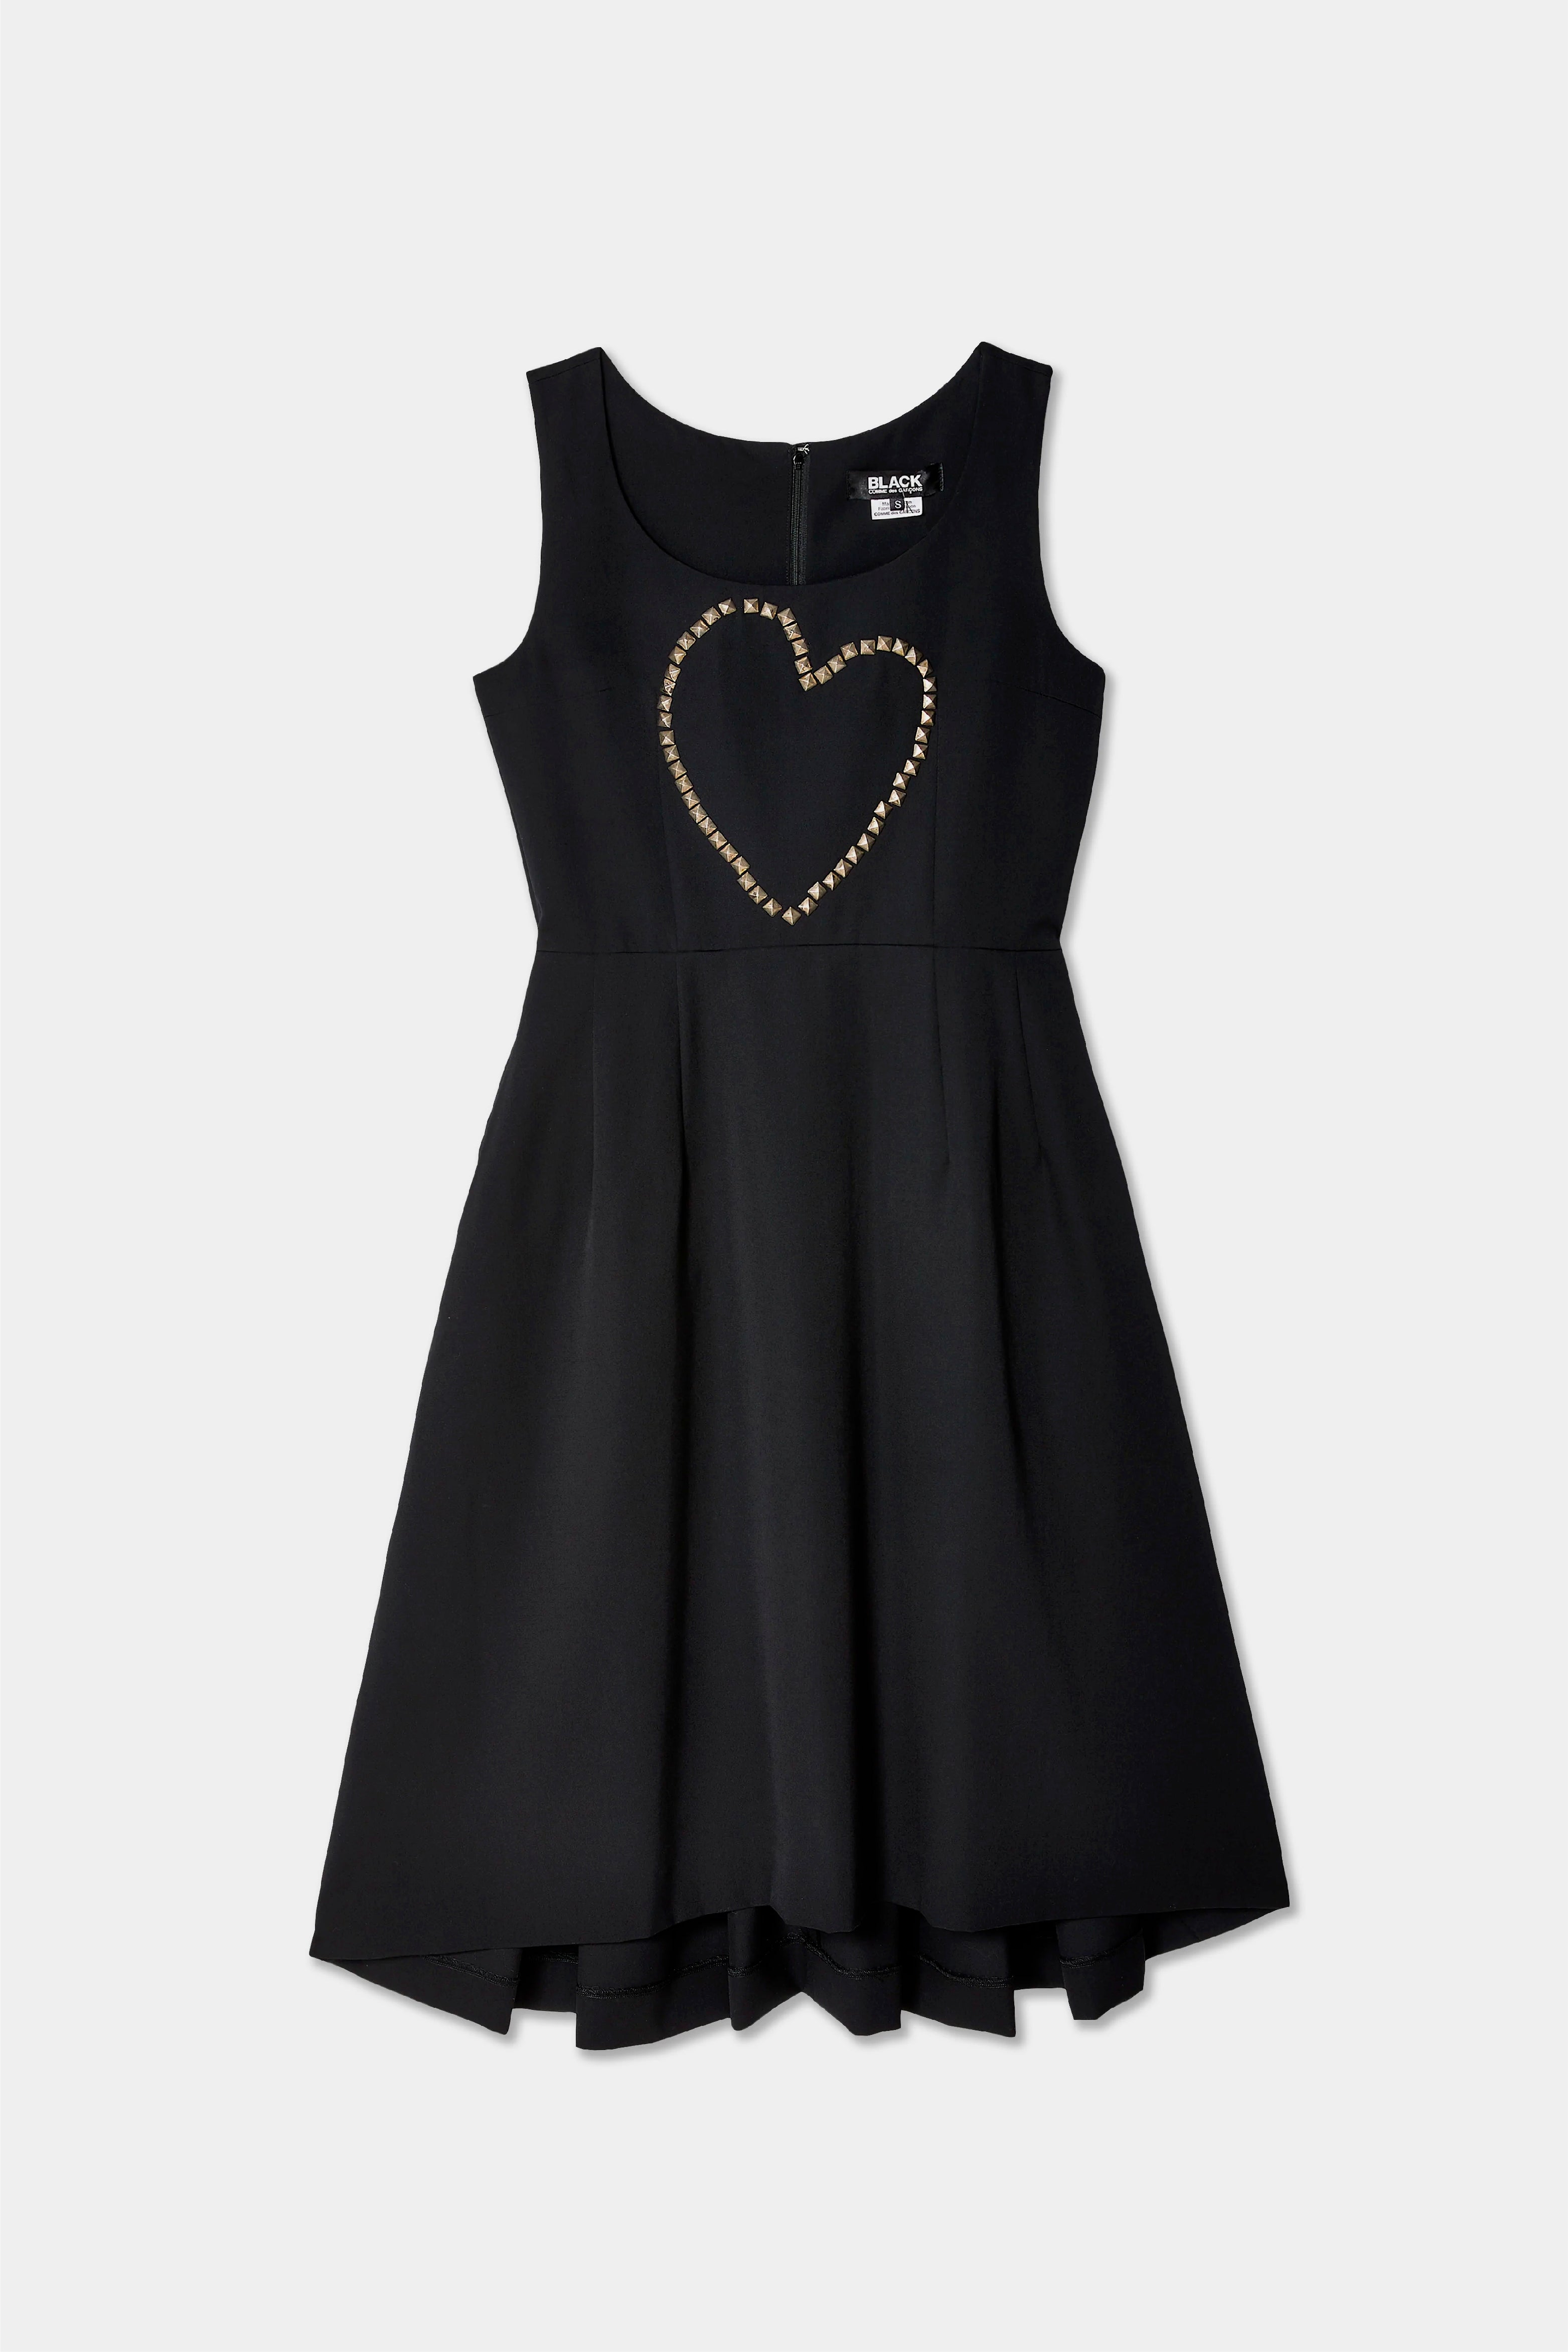 Selectshop FRAME - COMME DES GARÇONS BLACK Unisex Dress Dresses Concept Store Dubai